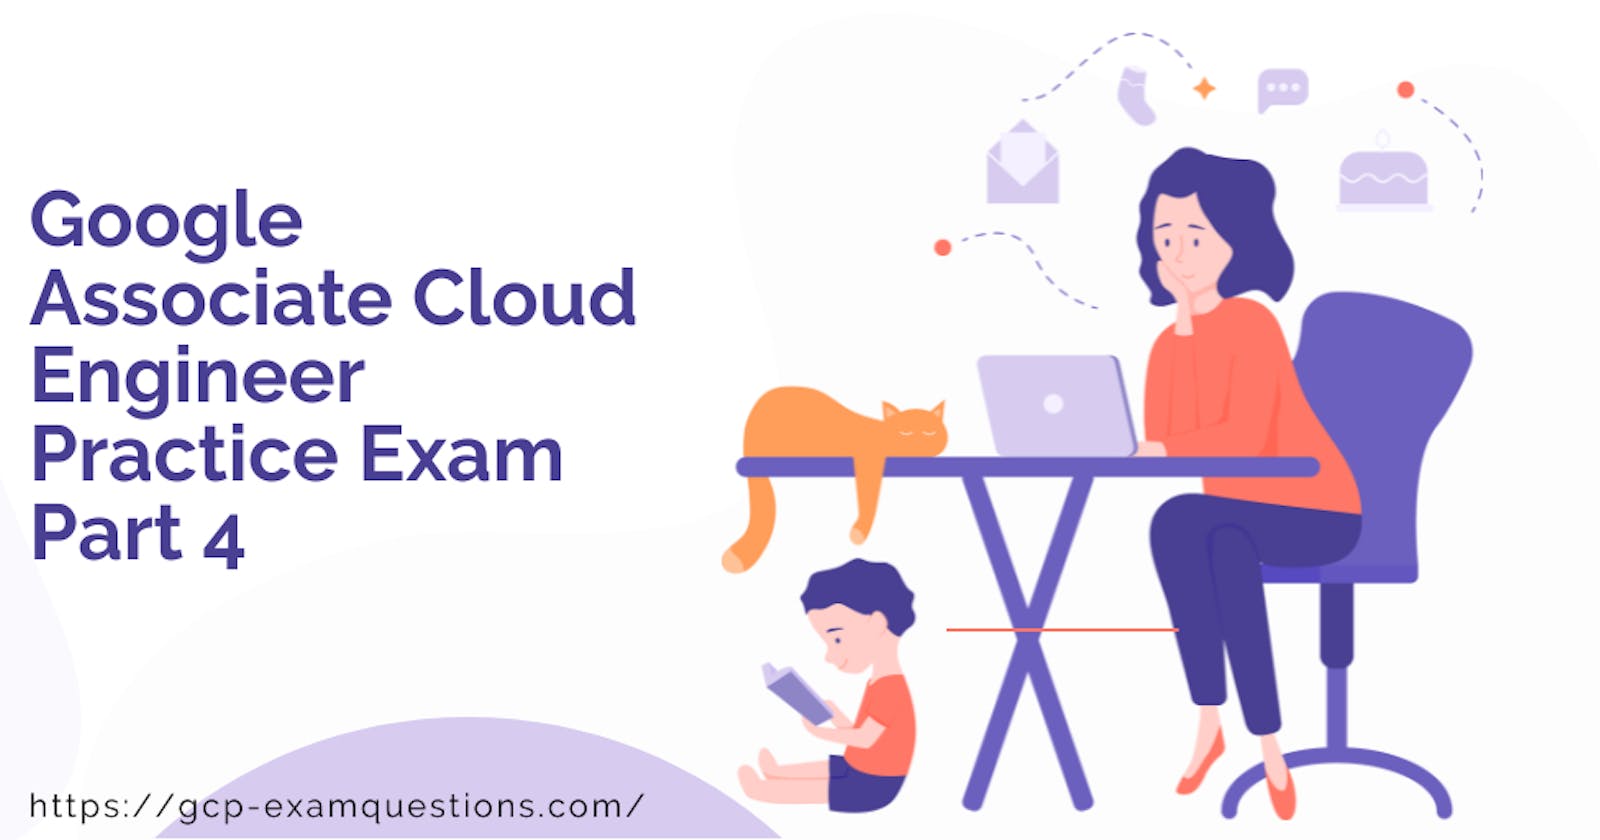 Google Associate Cloud Engineer Practice Exam Part 4